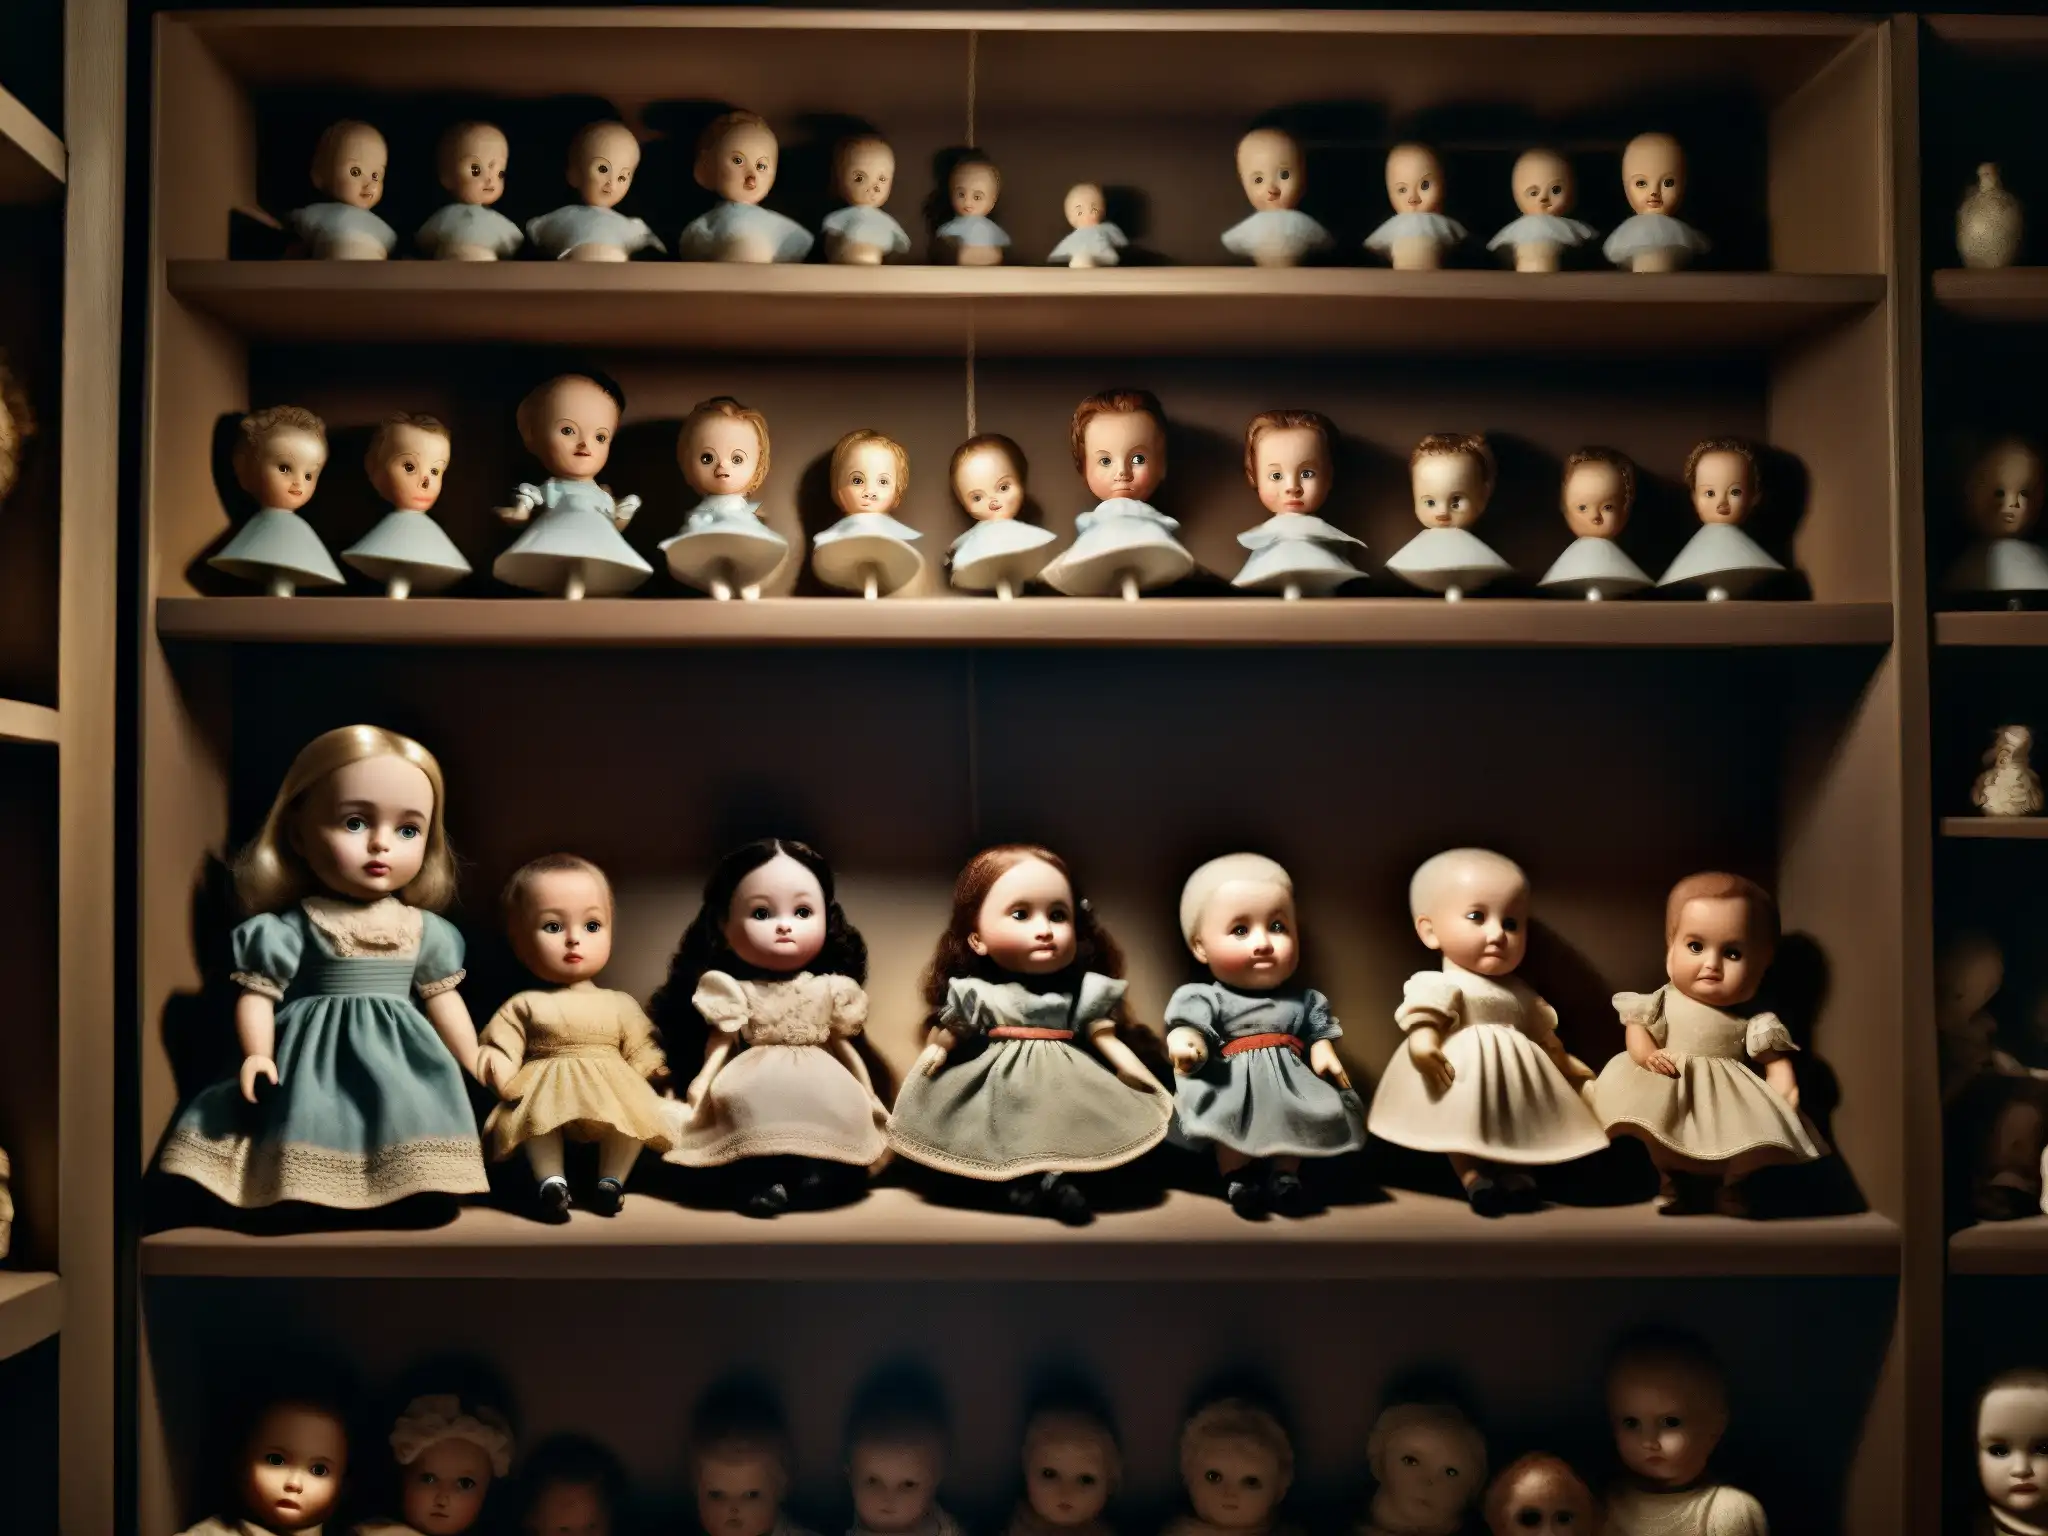 Una habitación lúgubre llena de muñecas antiguas de porcelana, con caras agrietadas y ojos vidriosos